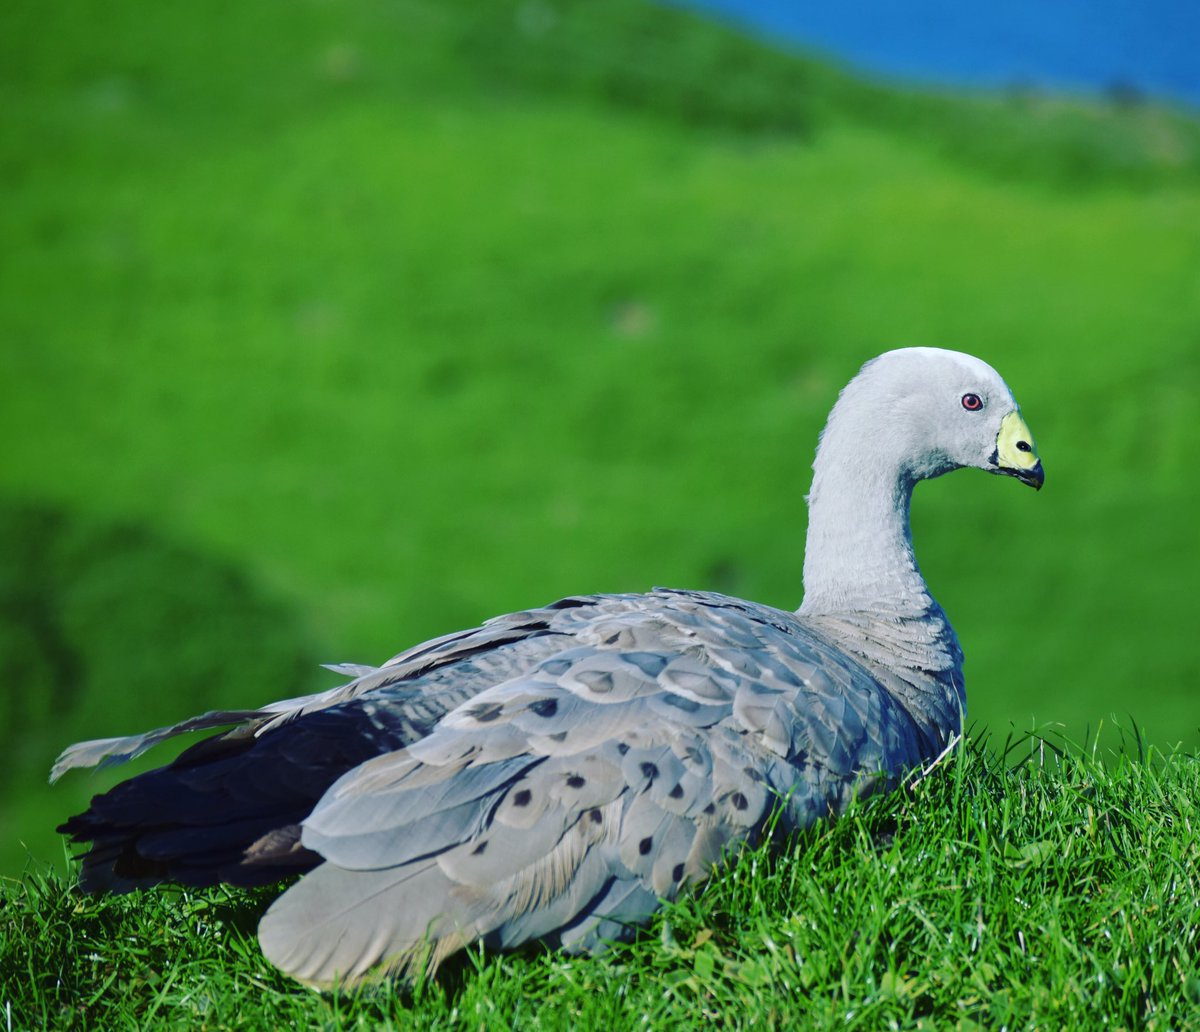 cape barren goose #capebarrengoose #phillipisland #birds